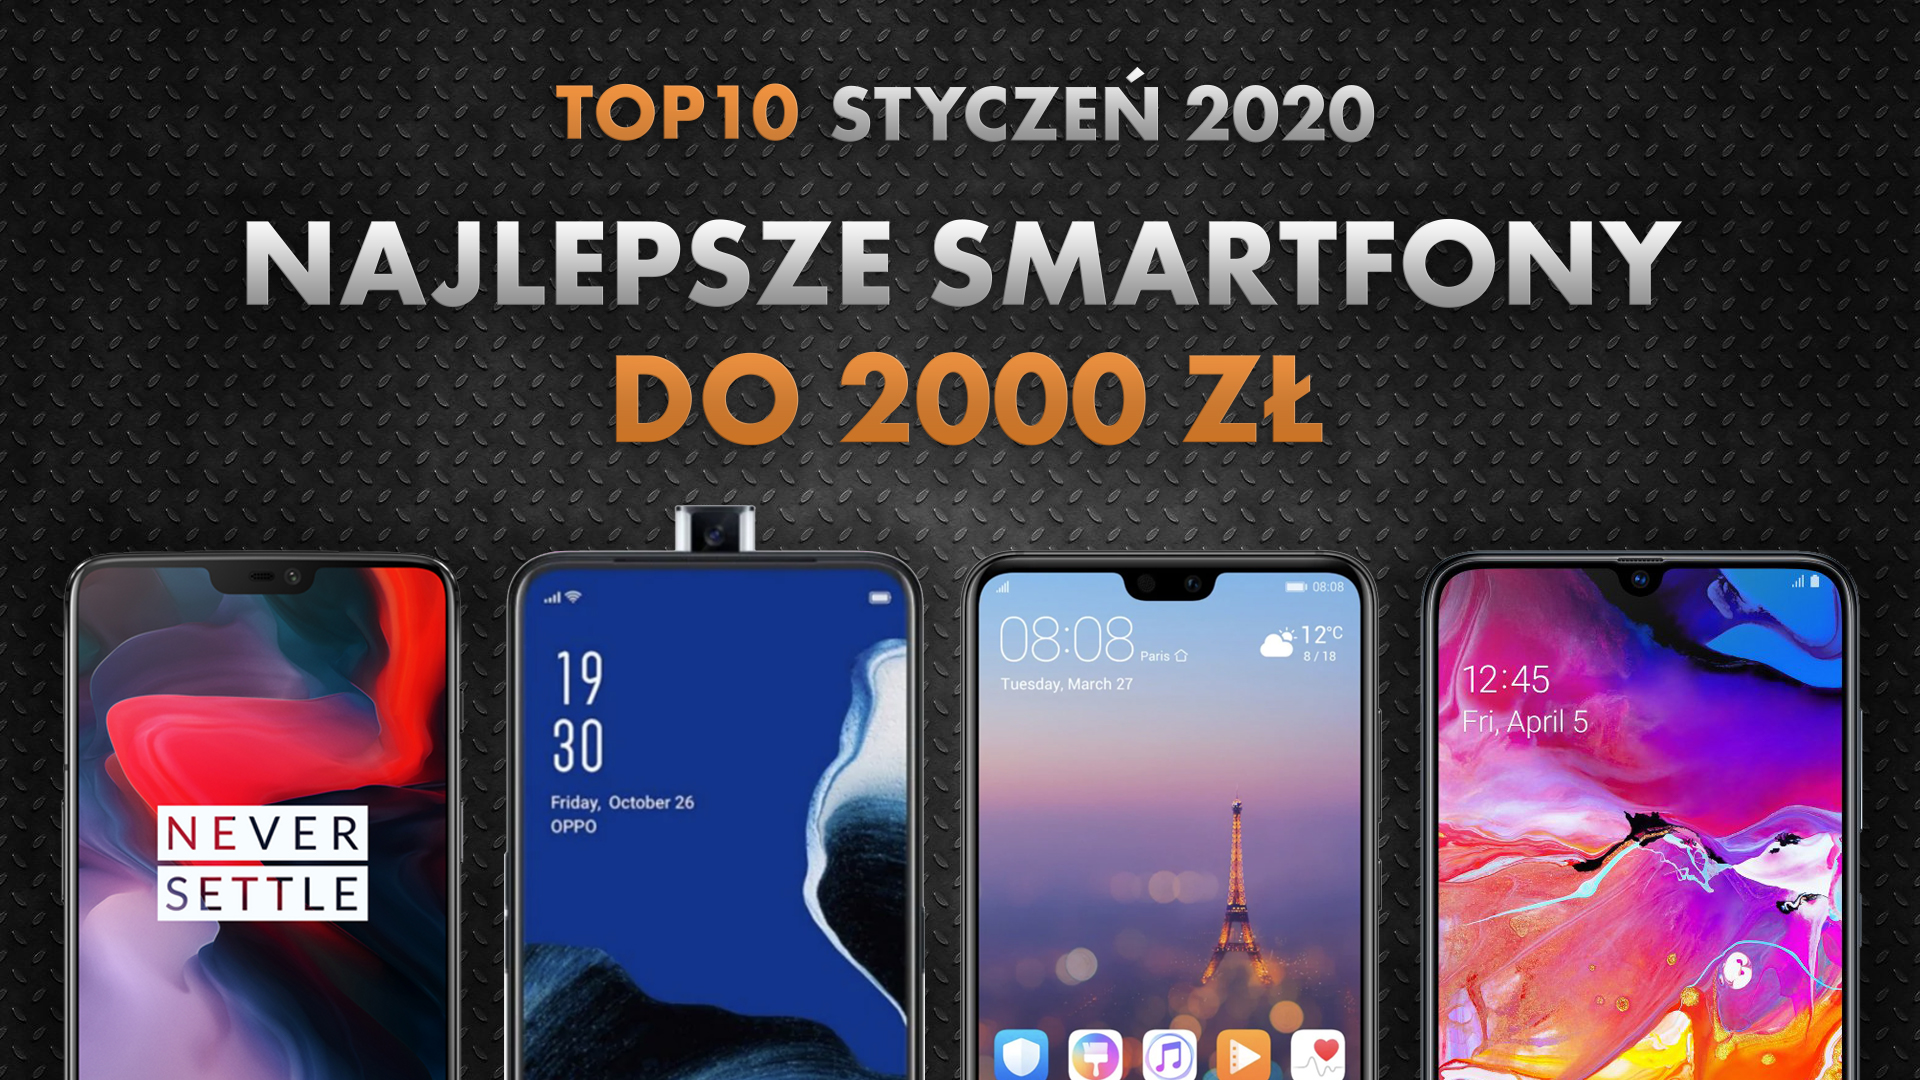 Najlepsze smartfony do 2000 zł | NASZE TOP 10 | Styczeń 2020